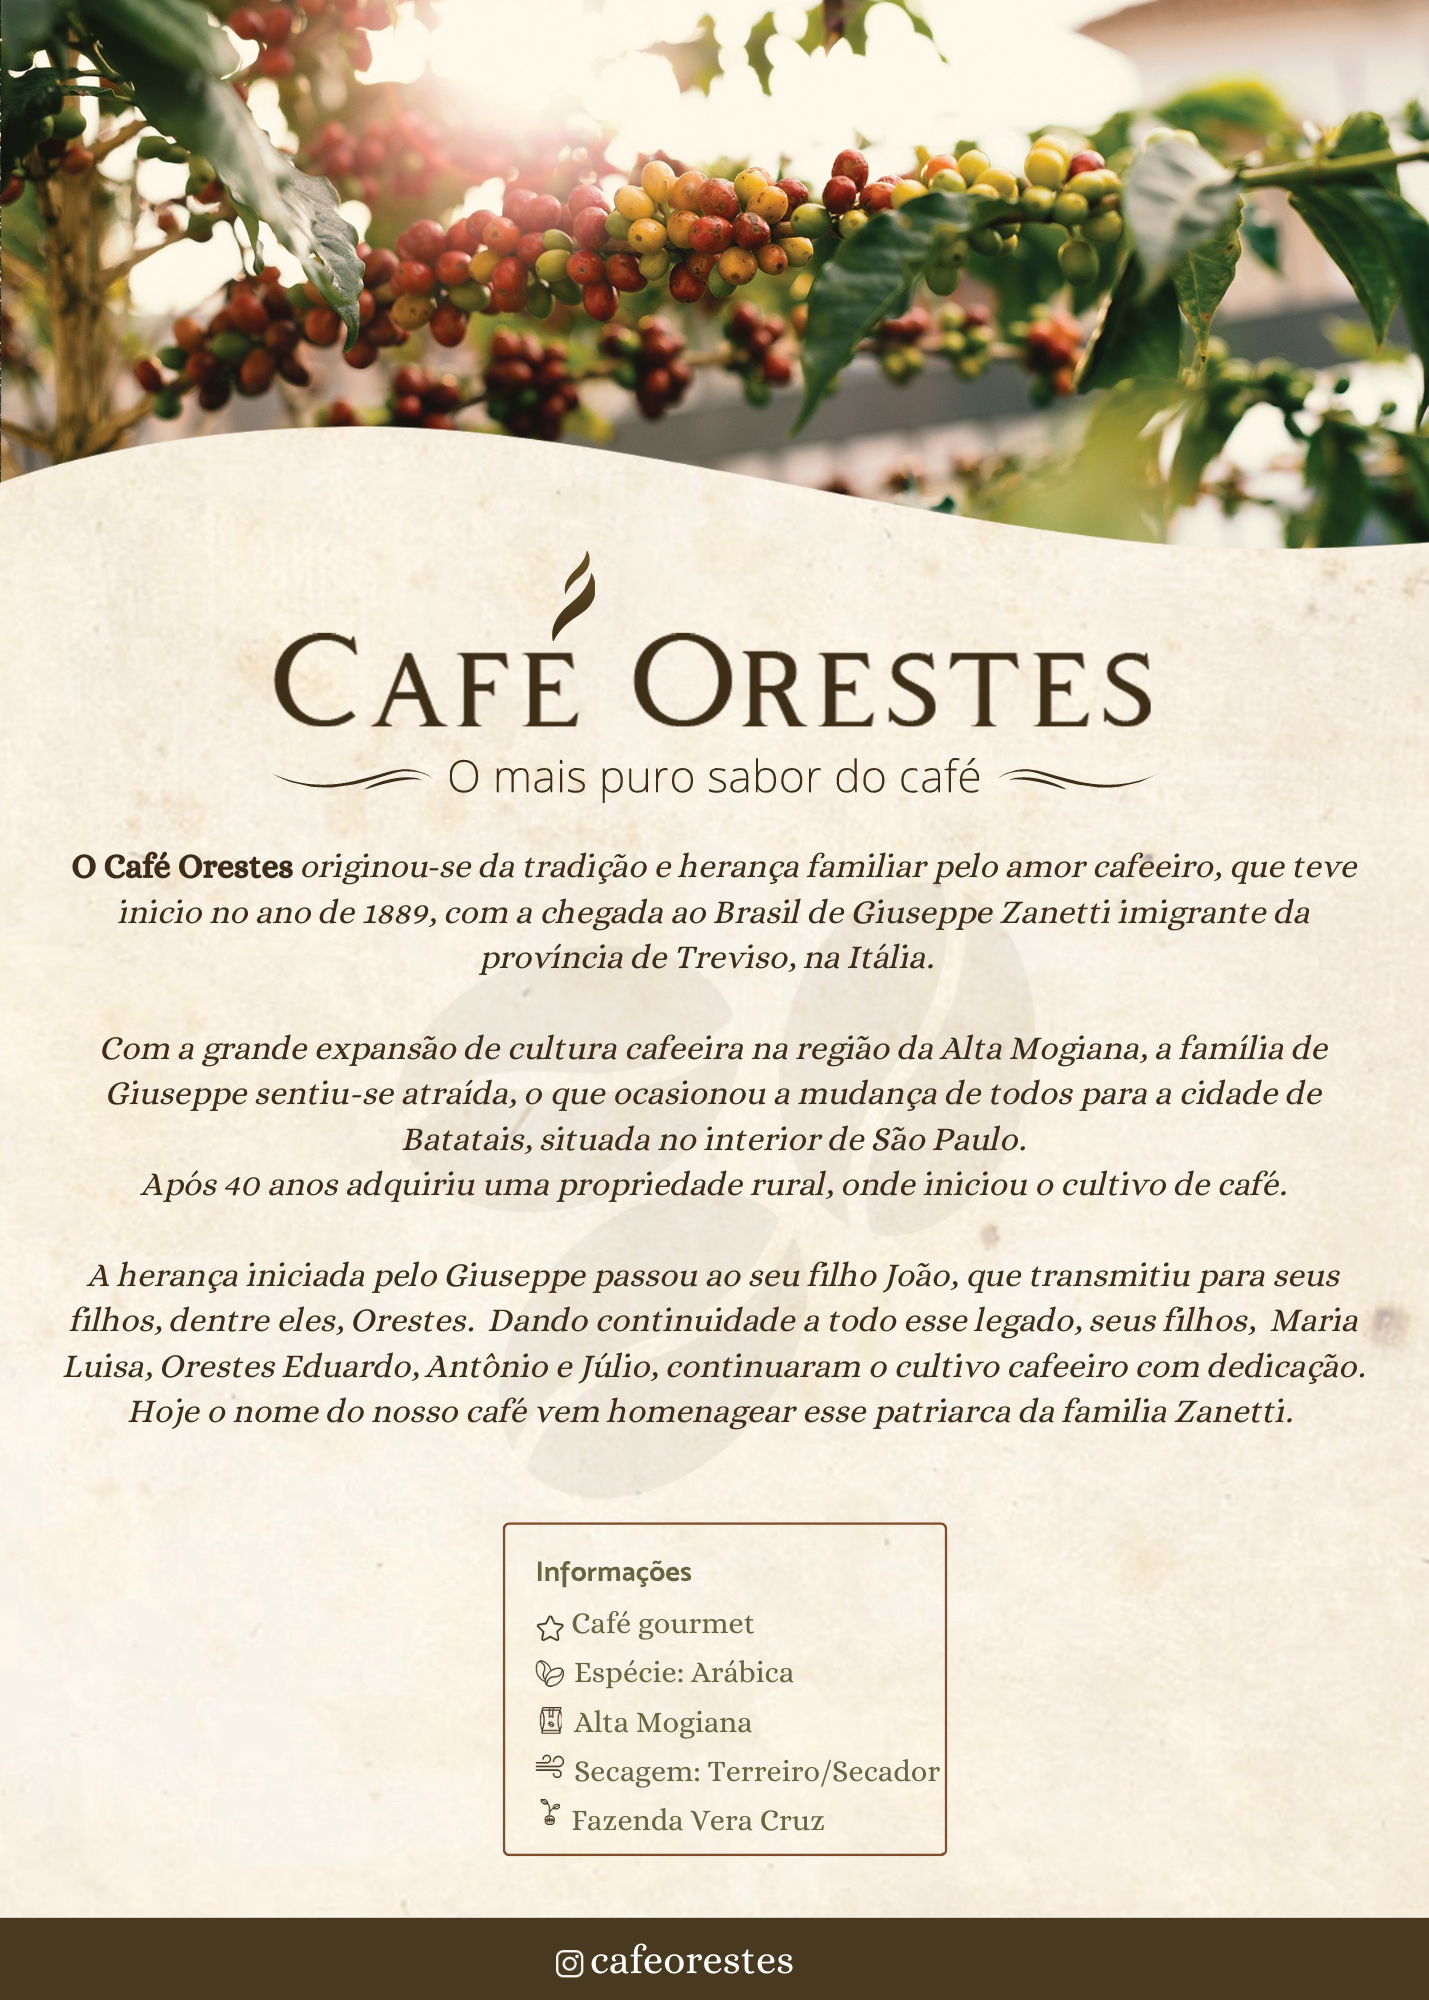 Loja online de Cafe Orestes - Nossa história